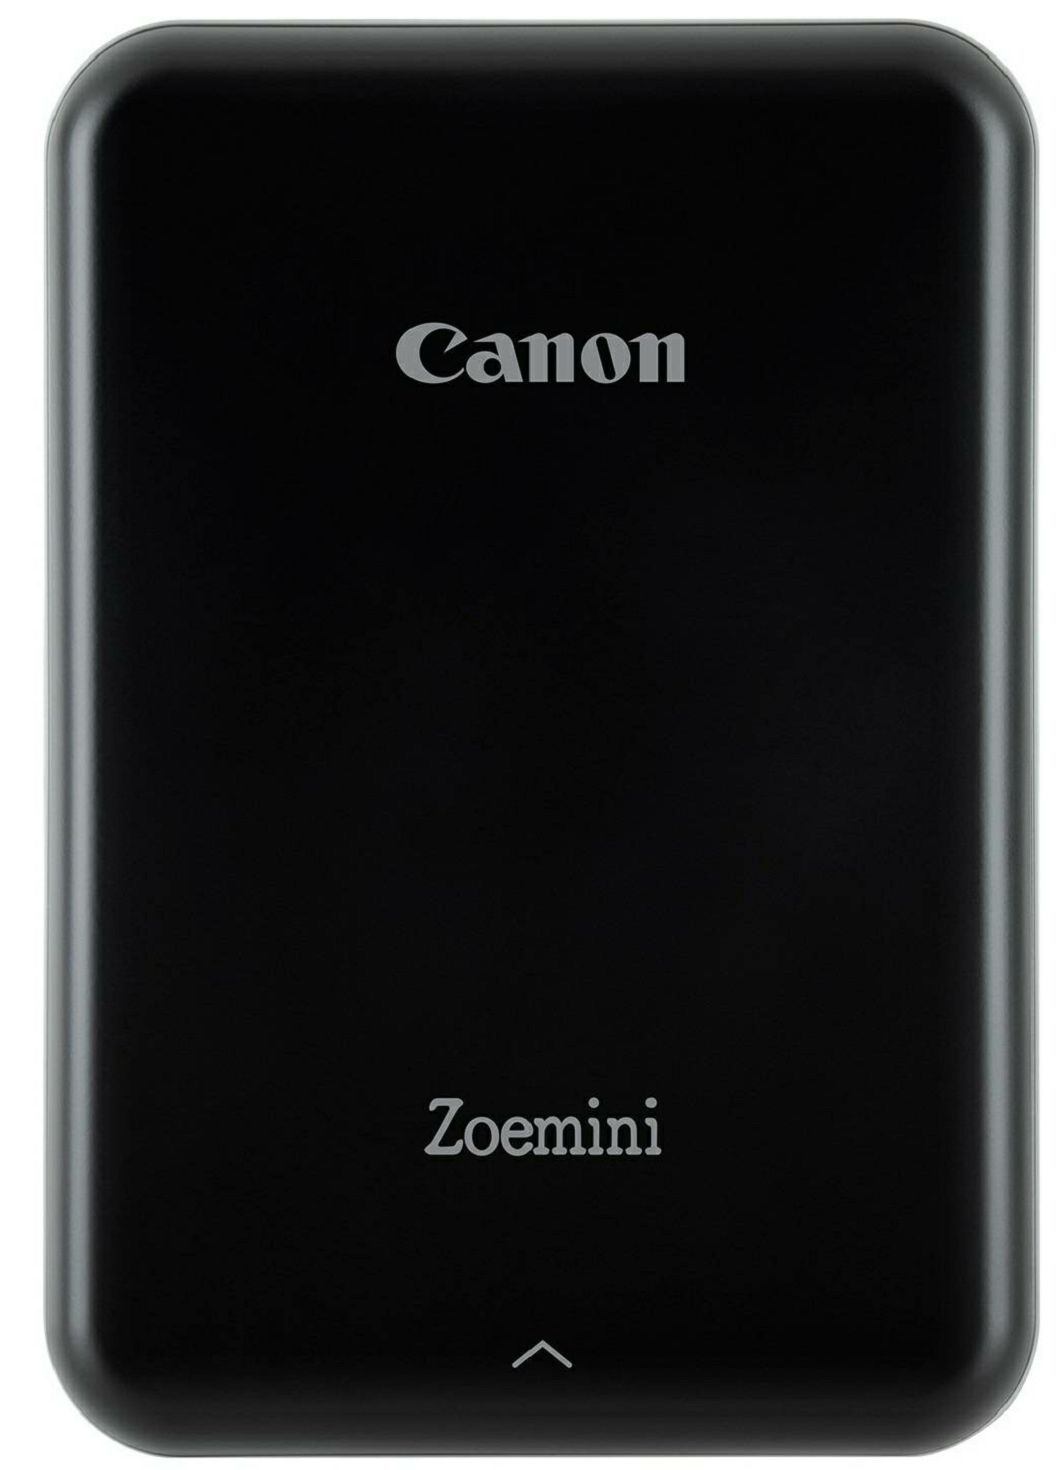 Canon Zoemini Zink Mini Mobile Photo Printer Black Slate Gray (3204C005AA)